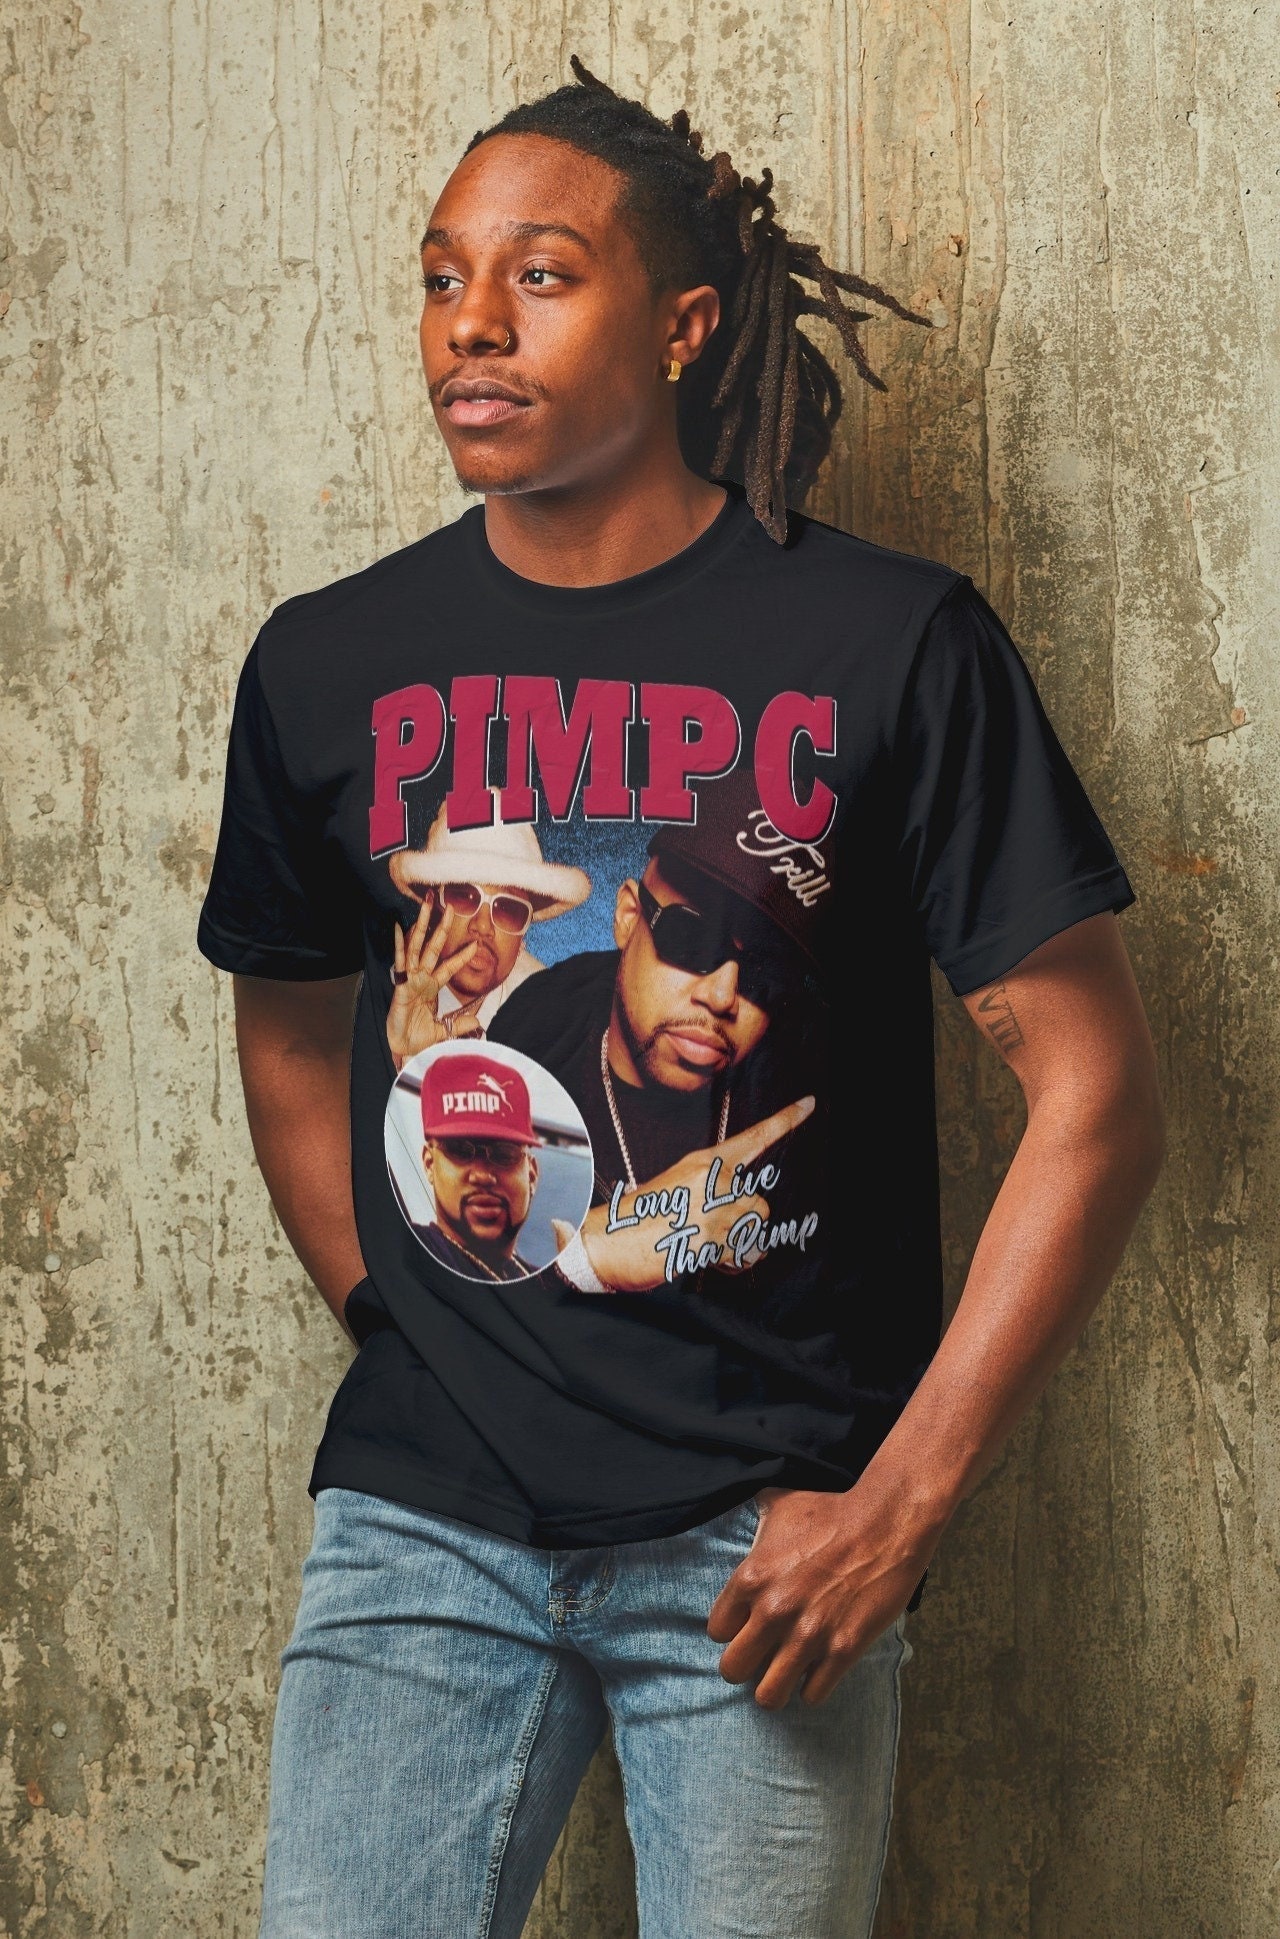 Pimp C Vintage T-Shirt